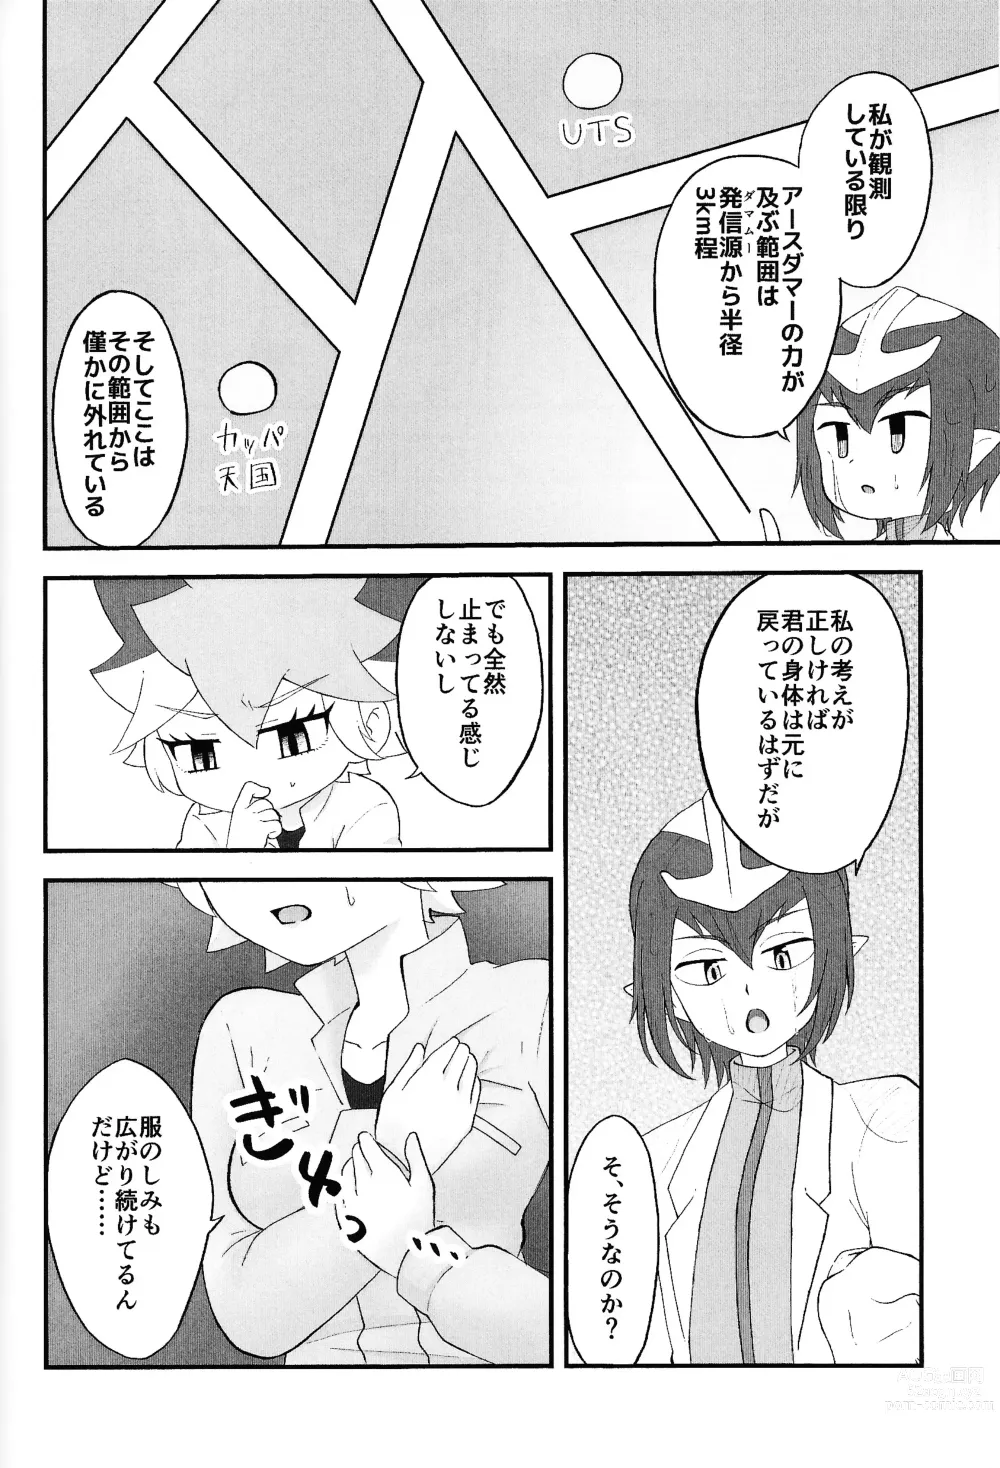 Page 7 of doujinshi Pandoranohako ka kindan no kajitsu ka